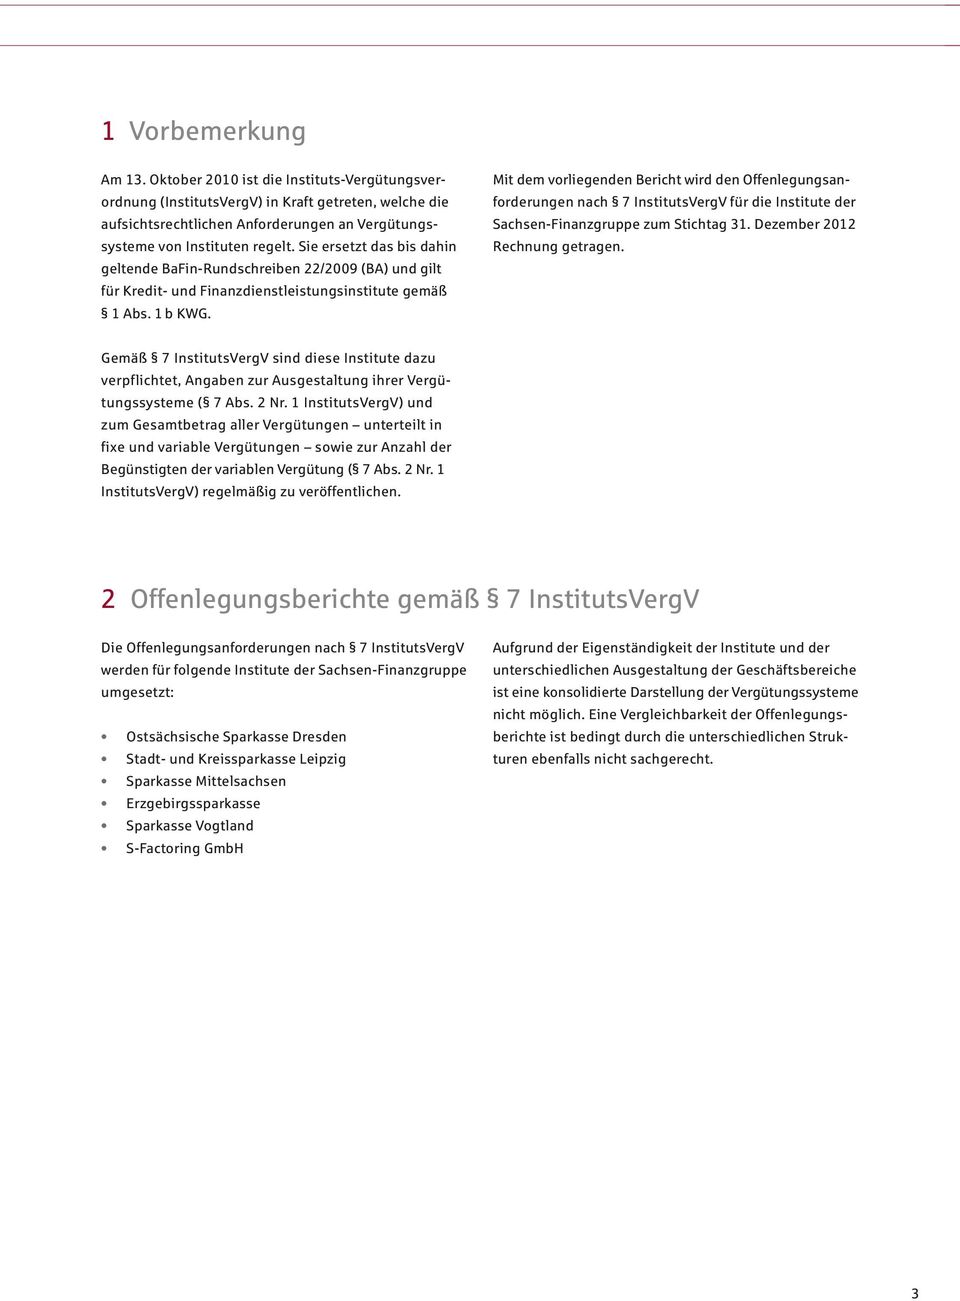 Mit dem vorliegenden Bericht wird den Offenlegungs anforderungen nach 7 InstitutsVergV für die Institute der Sachsen-Finanzgruppe zum Stichtag 31. Dezember 2012 Rechnung getragen.